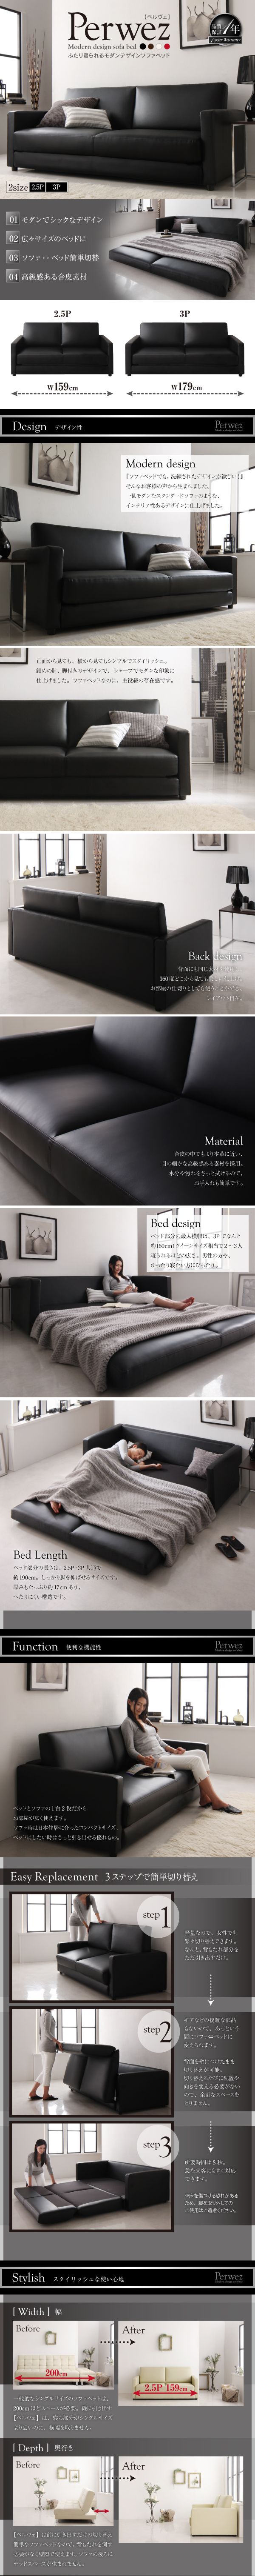 販売特販■Perwez 2.5P(160cm) ふたり寝られるモダンデザインソファベッド [ペルヴェ] シンプルかつカッコいいデザイン 広々サイズ 高級感 合成皮革